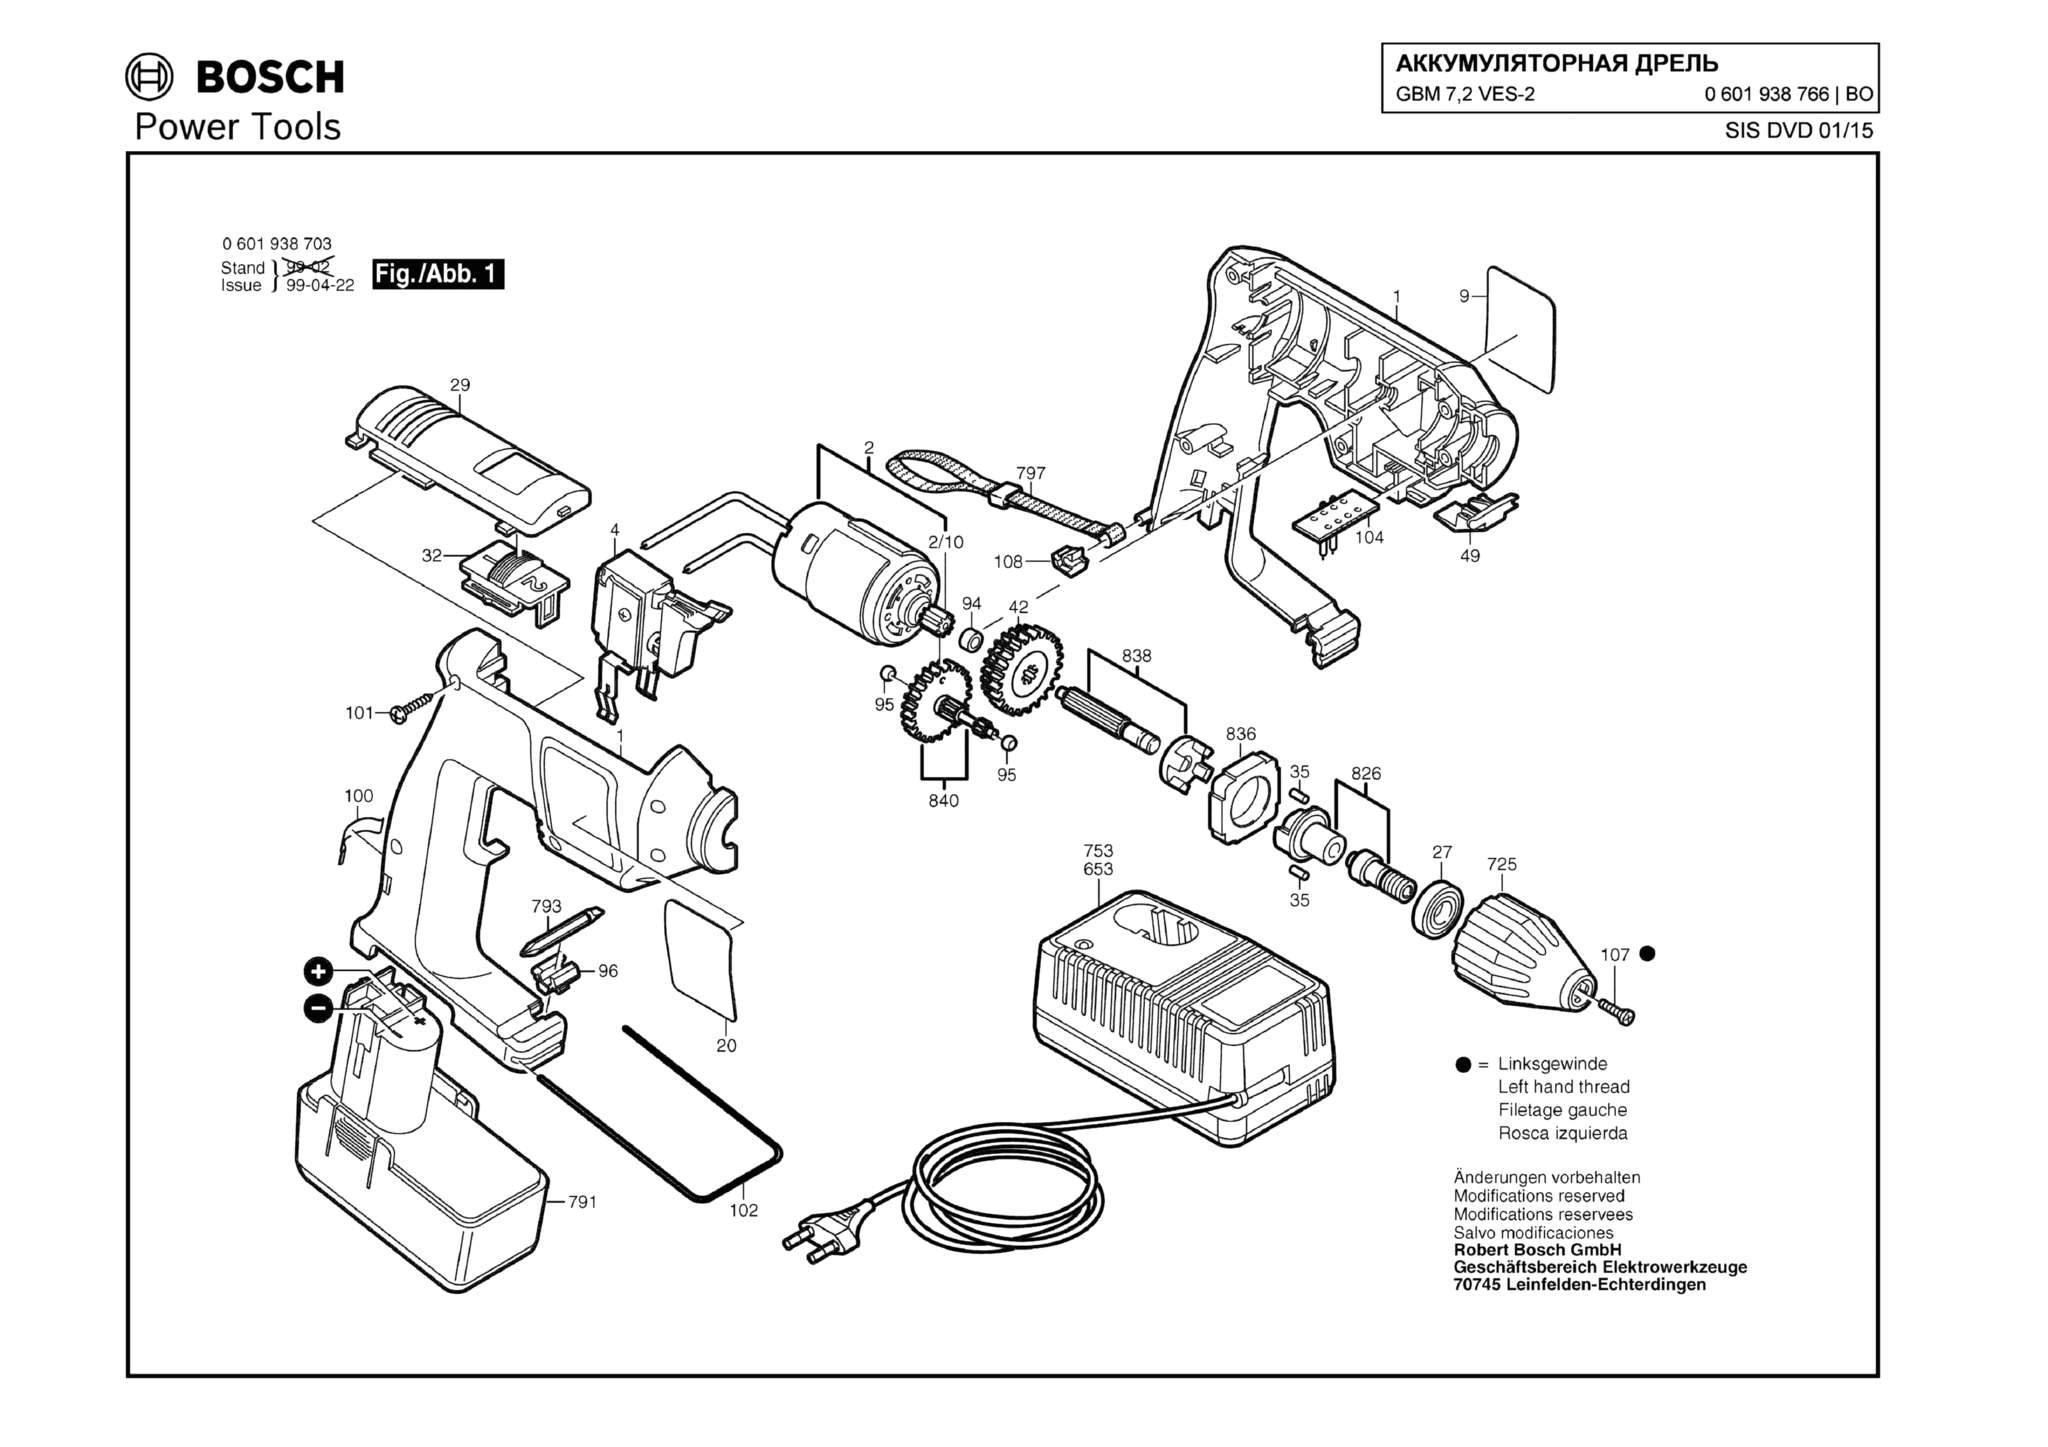 Запчасти, схема и деталировка Bosch GBM 7,2 VES-2 (ТИП 0601938766)